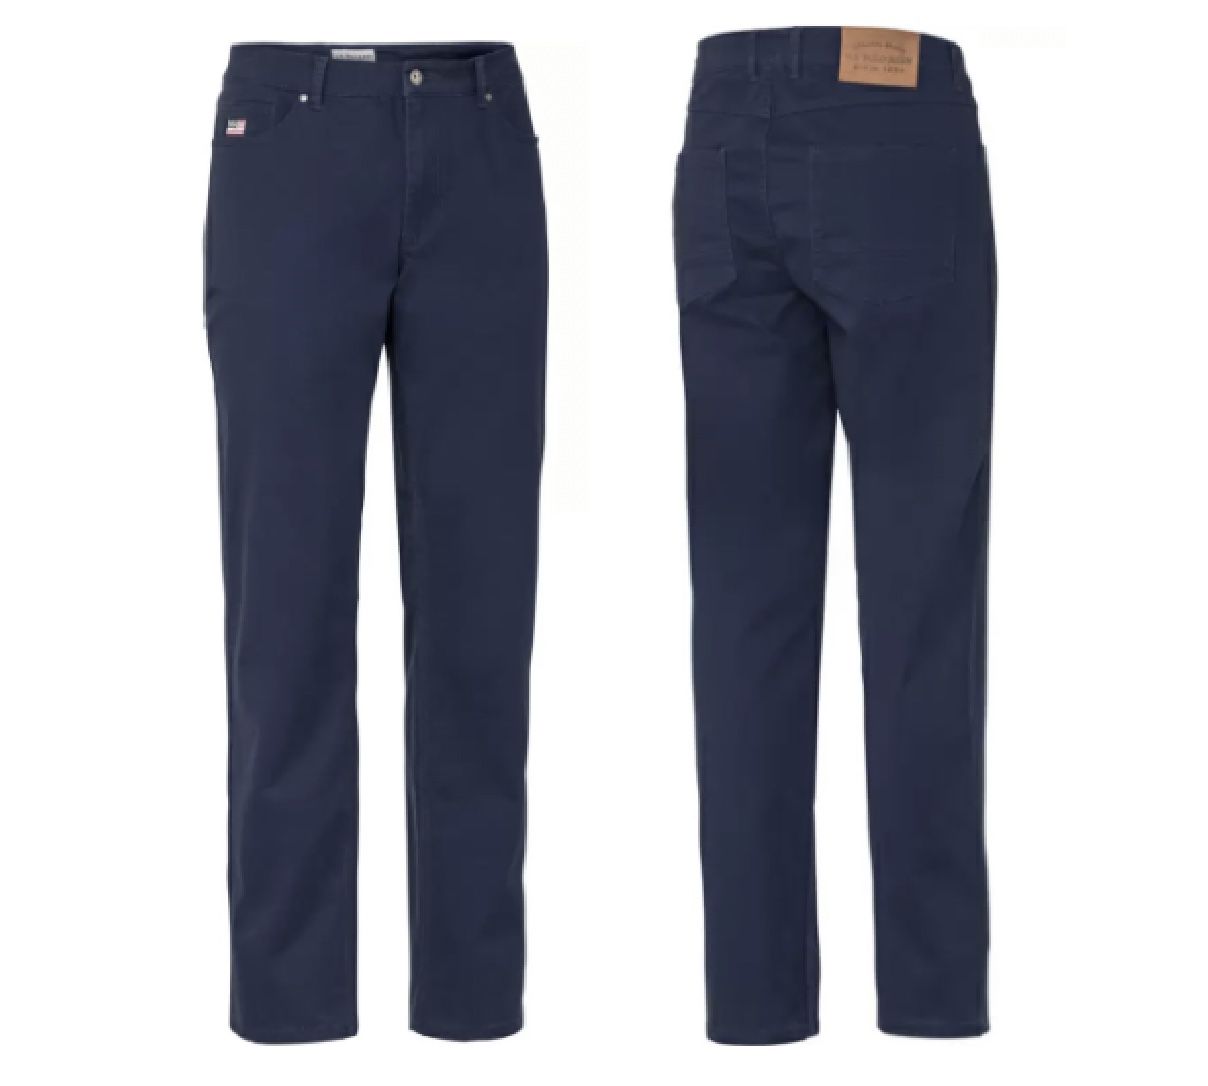 U.S. POLO ASSN. Herren Stretch Jeans in 3 Farben für je 26,25€ (statt 40€)